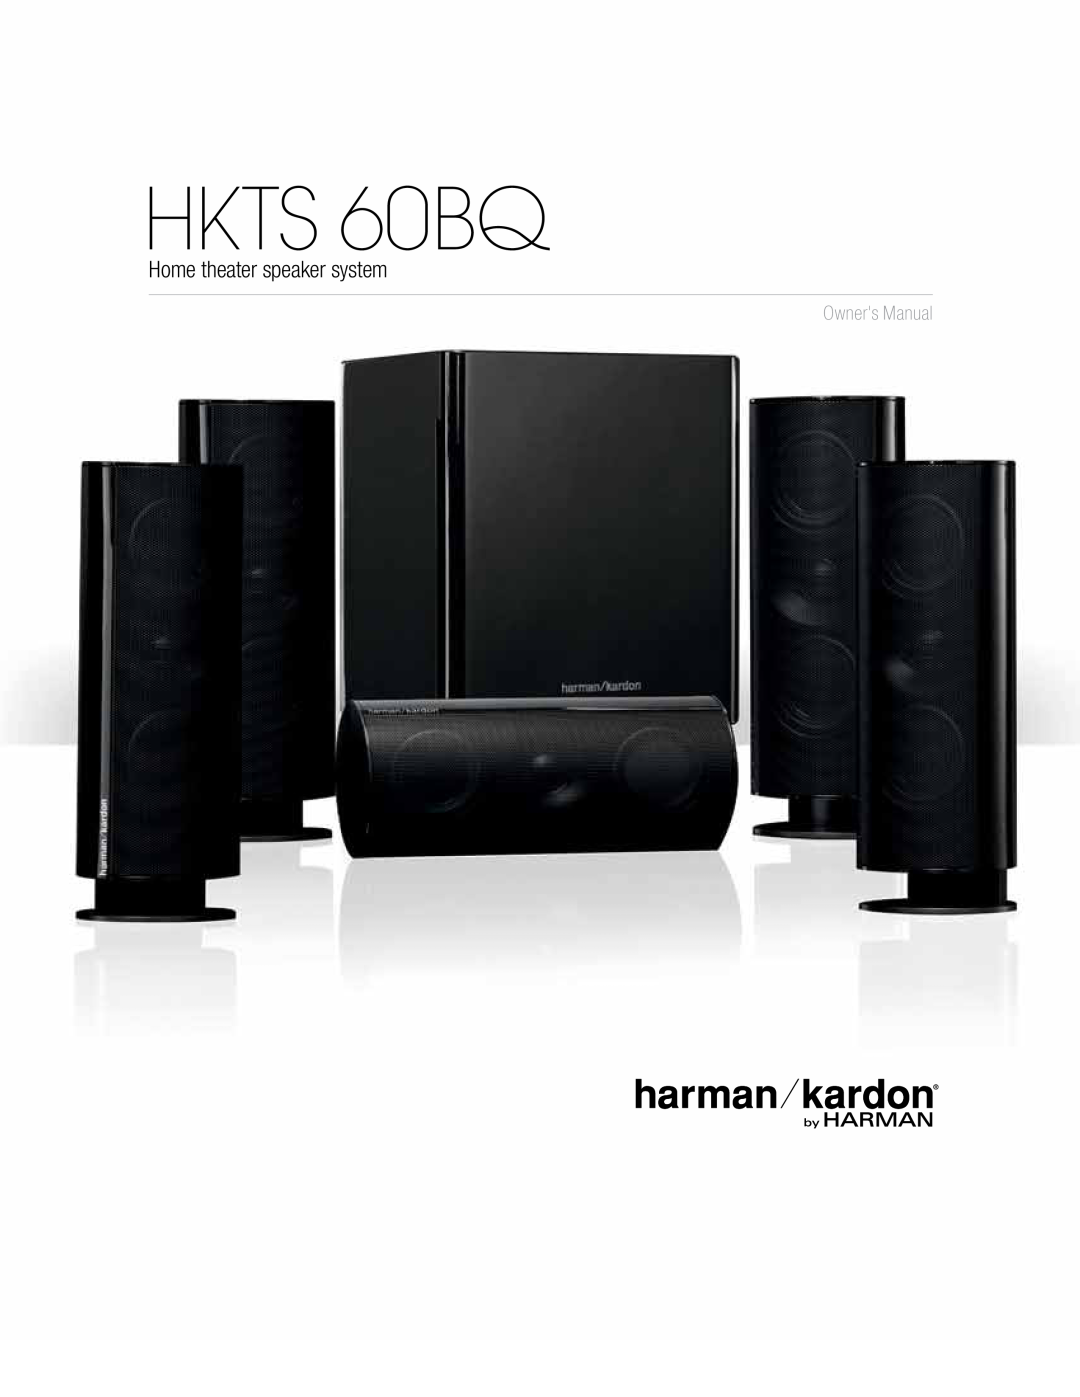 Harman-Kardon owner manual HKTS 60BQ, Home theater speaker system 